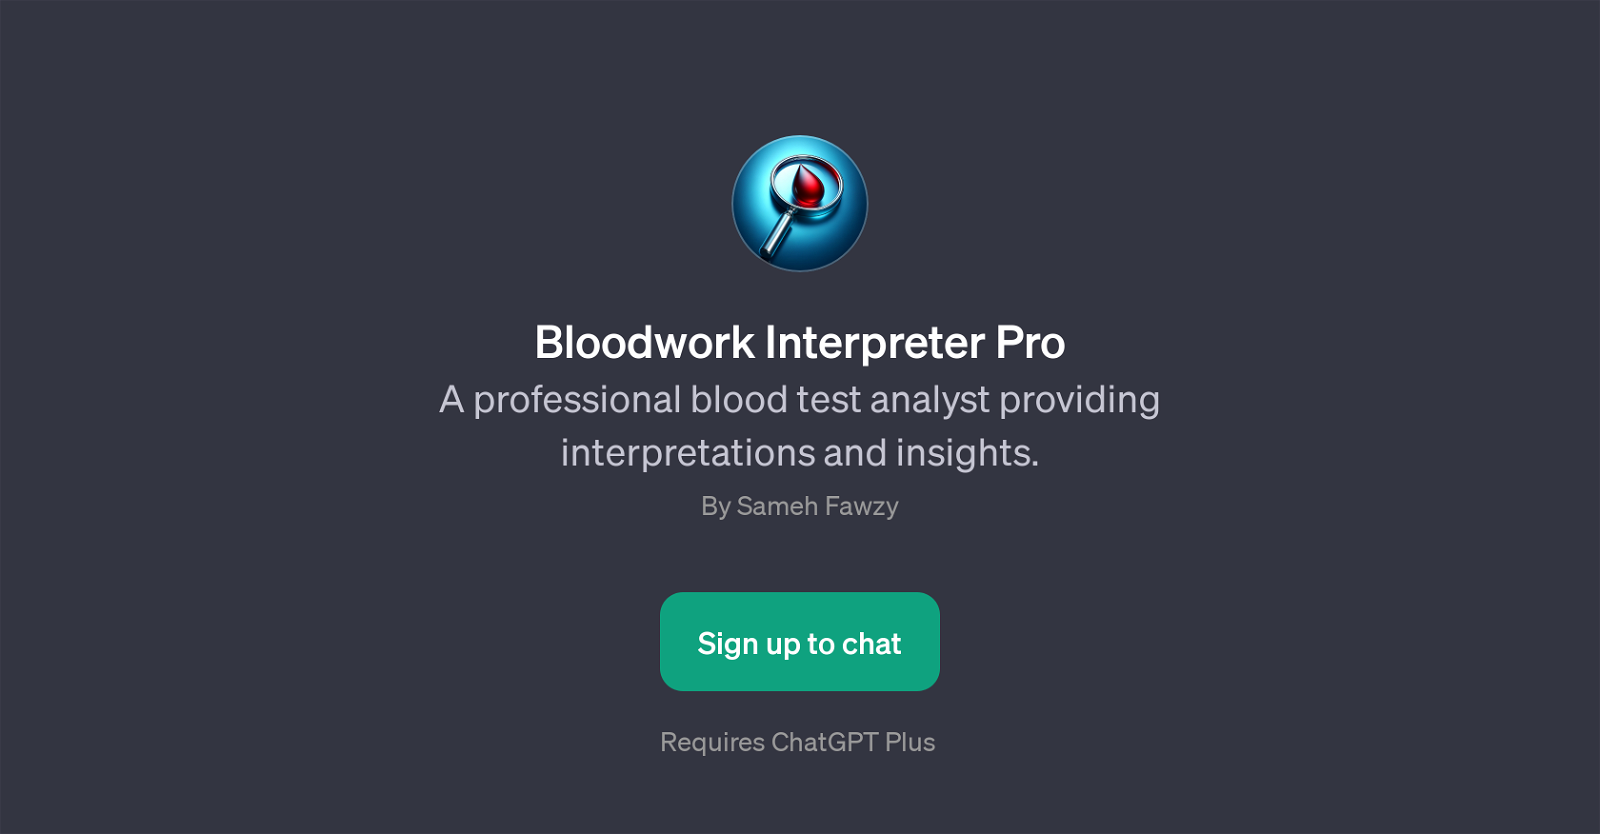 Bloodwork Interpreter Pro website